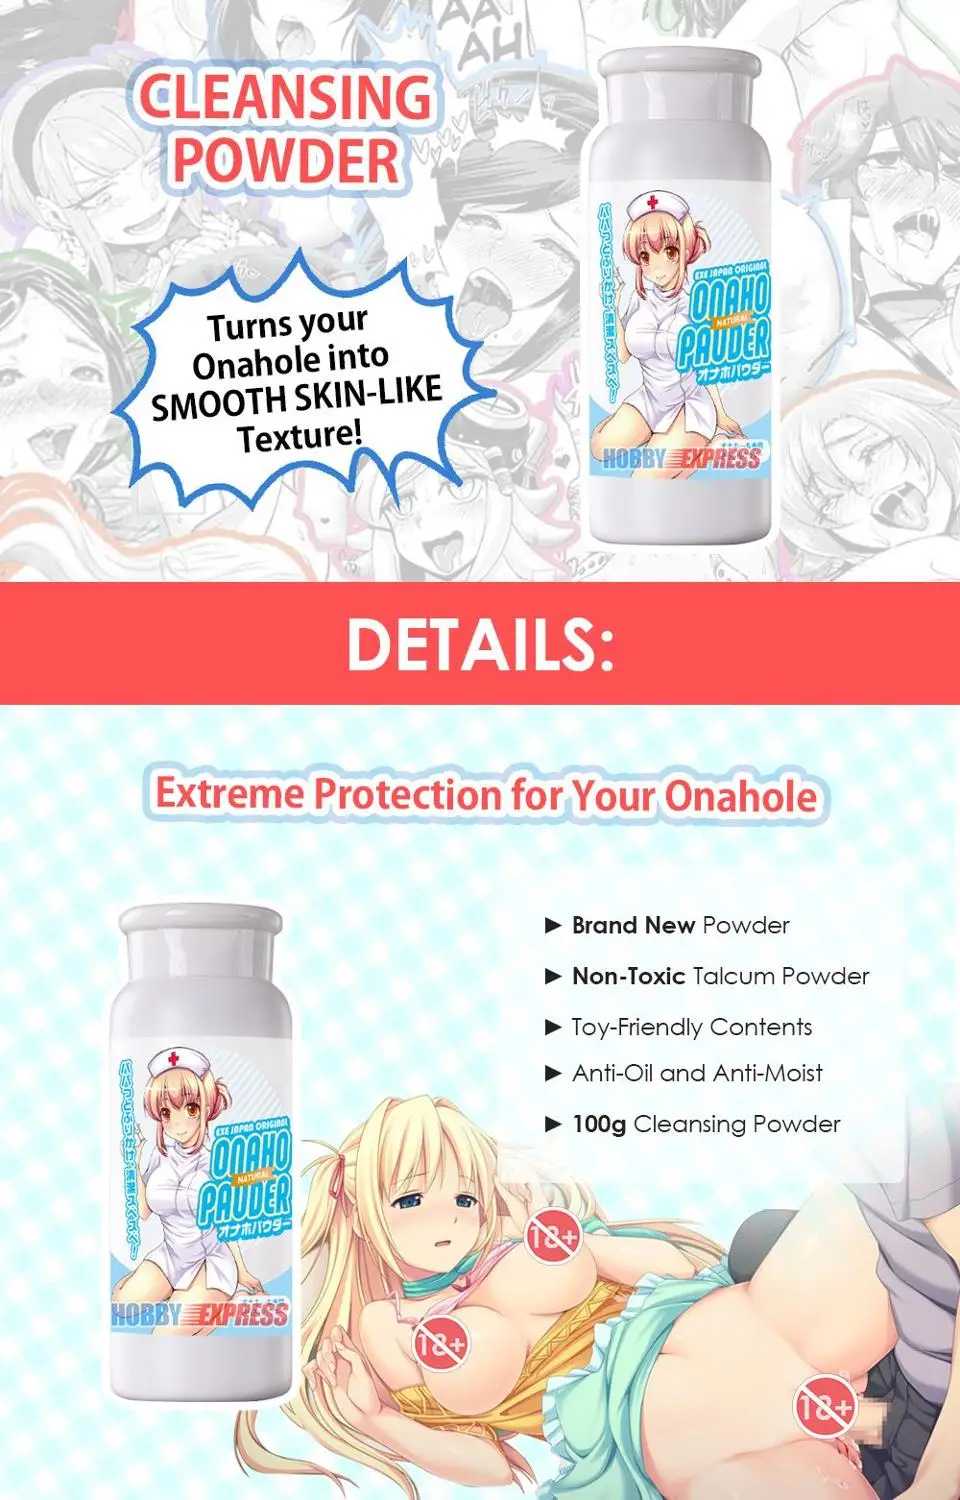 Hobby Express Anime Ona Otvor Ochranný Čistiaci Prášok Starostlivosť Kit